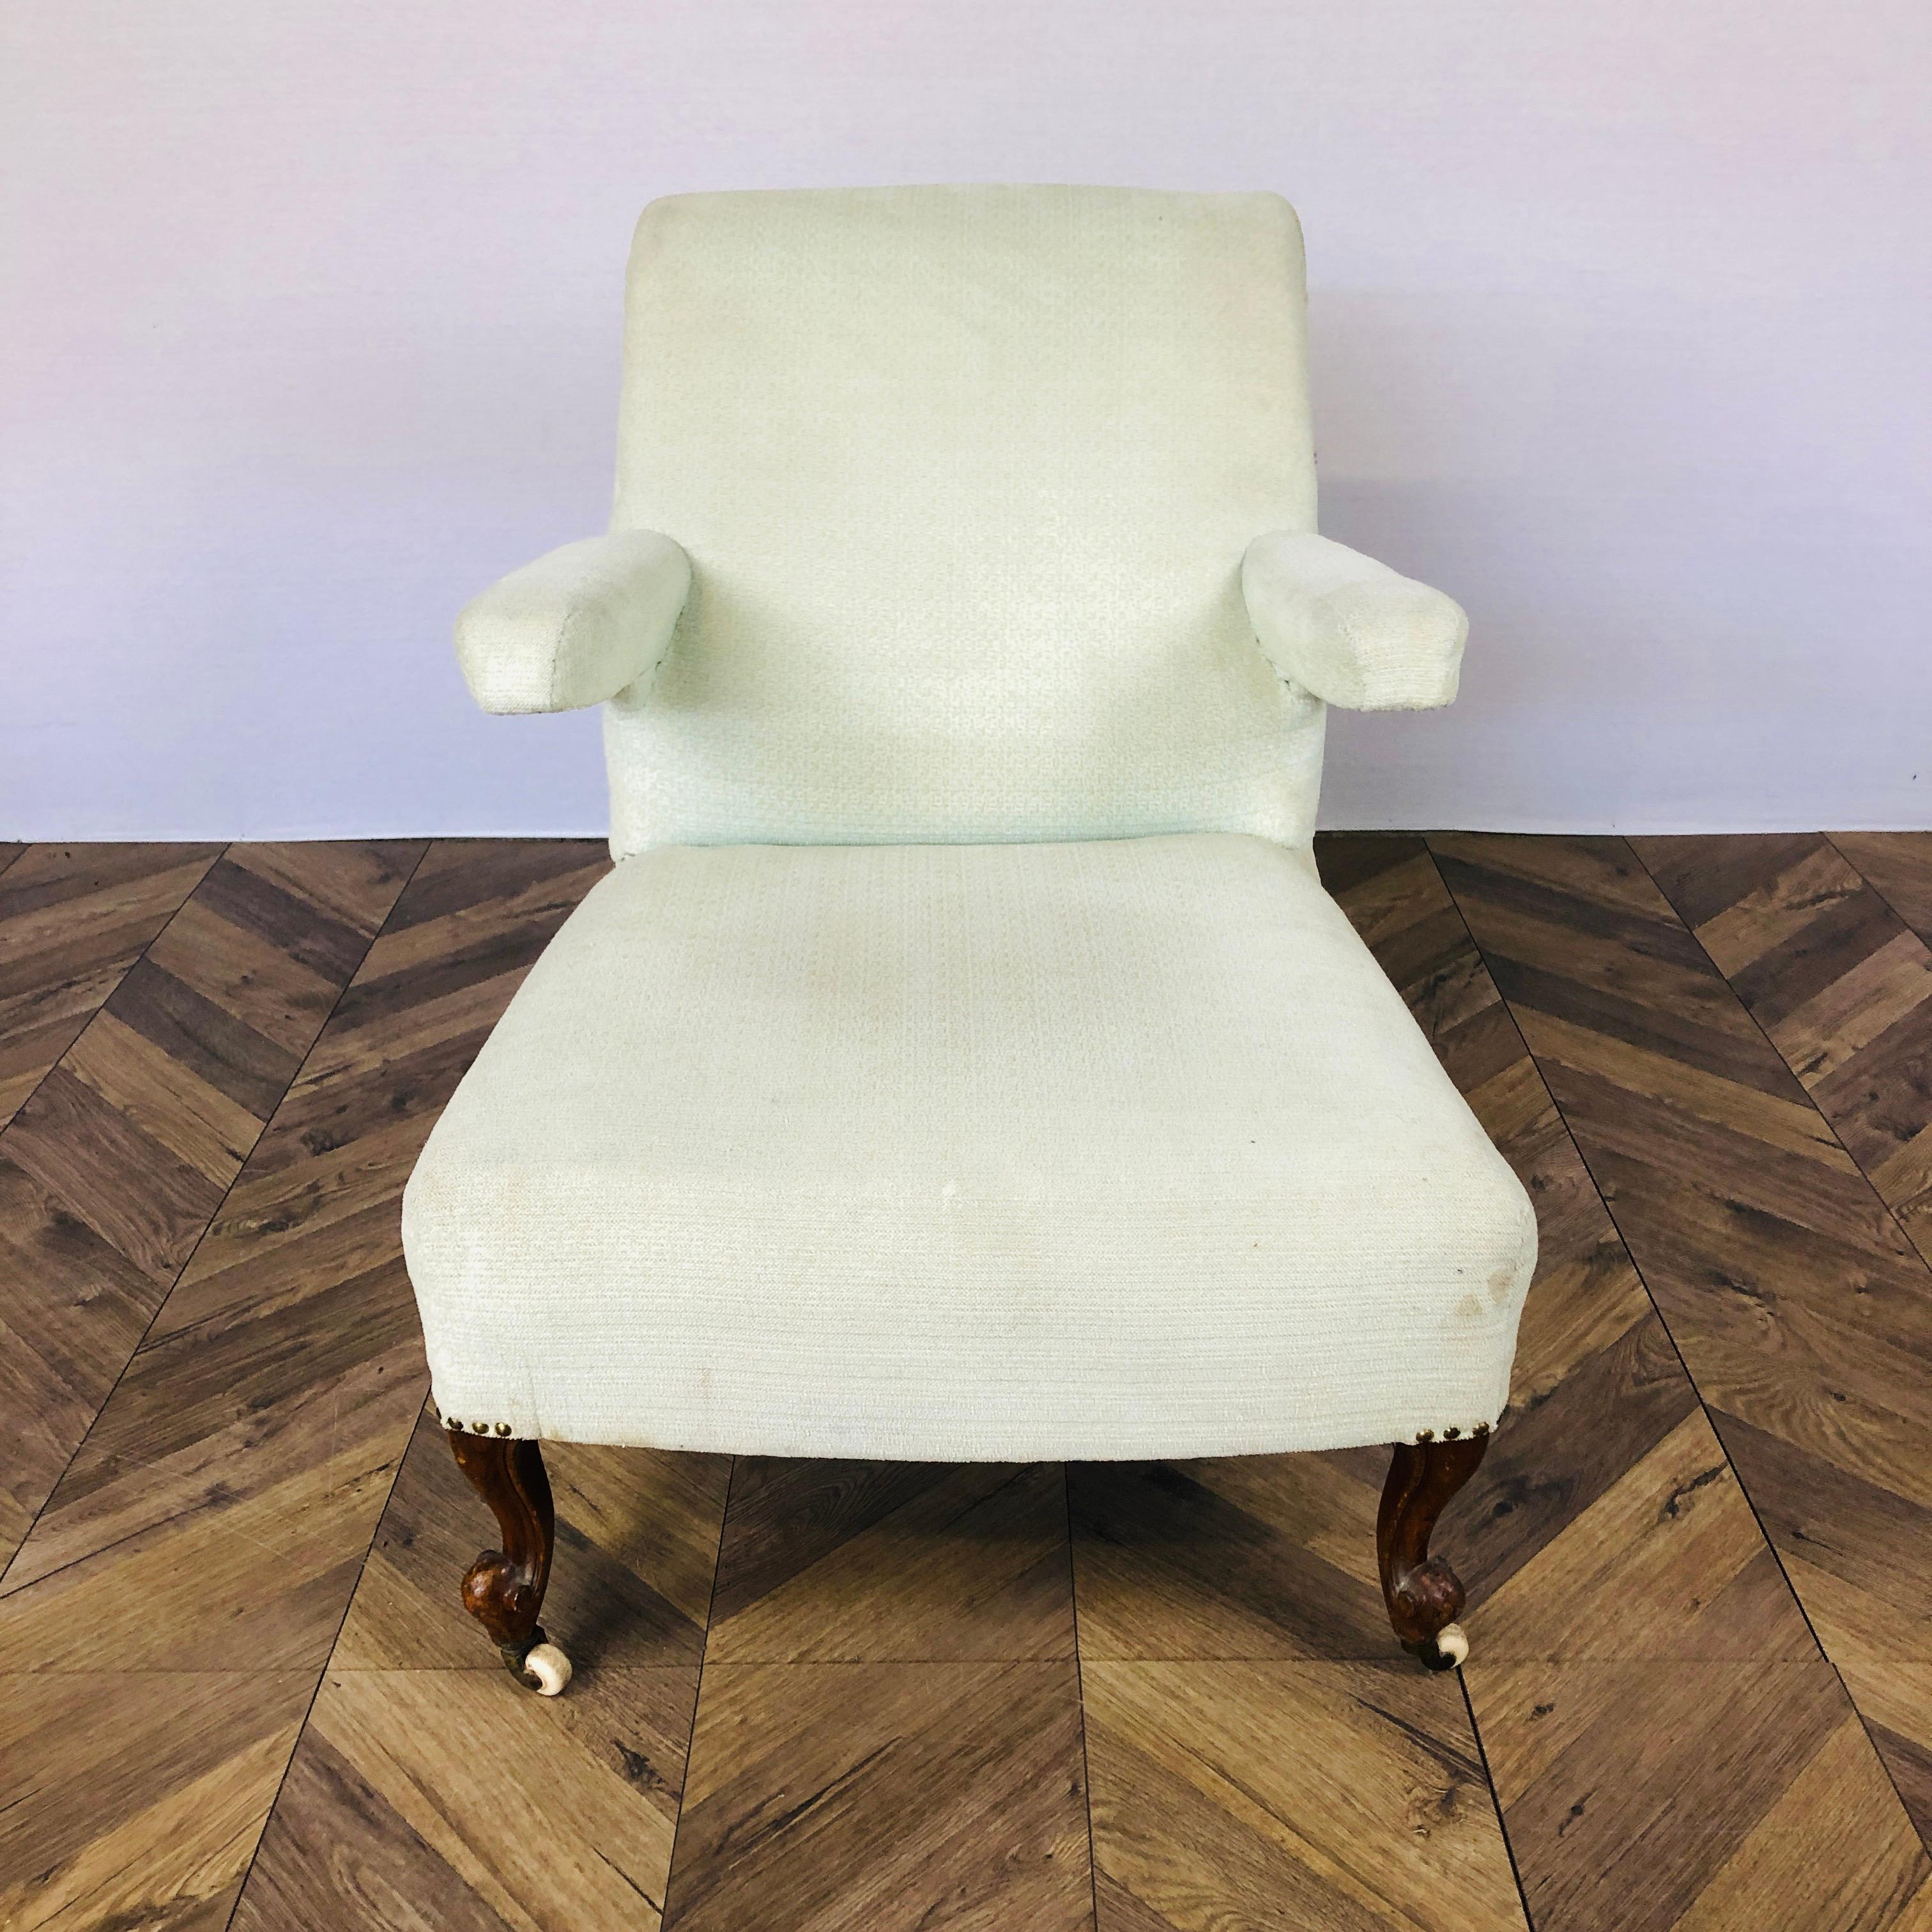 Ein gut proportionierter, ungewöhnlicher viktorianischer Salon oder medizinischer Sessel. Ca. 1850er Jahre. 

Der Stuhl hat eine schräge Rückenlehne mit gerolltem Oberteil und schwebenden Armlehnen. Der Stuhl steht auf originalen Rollen und 4